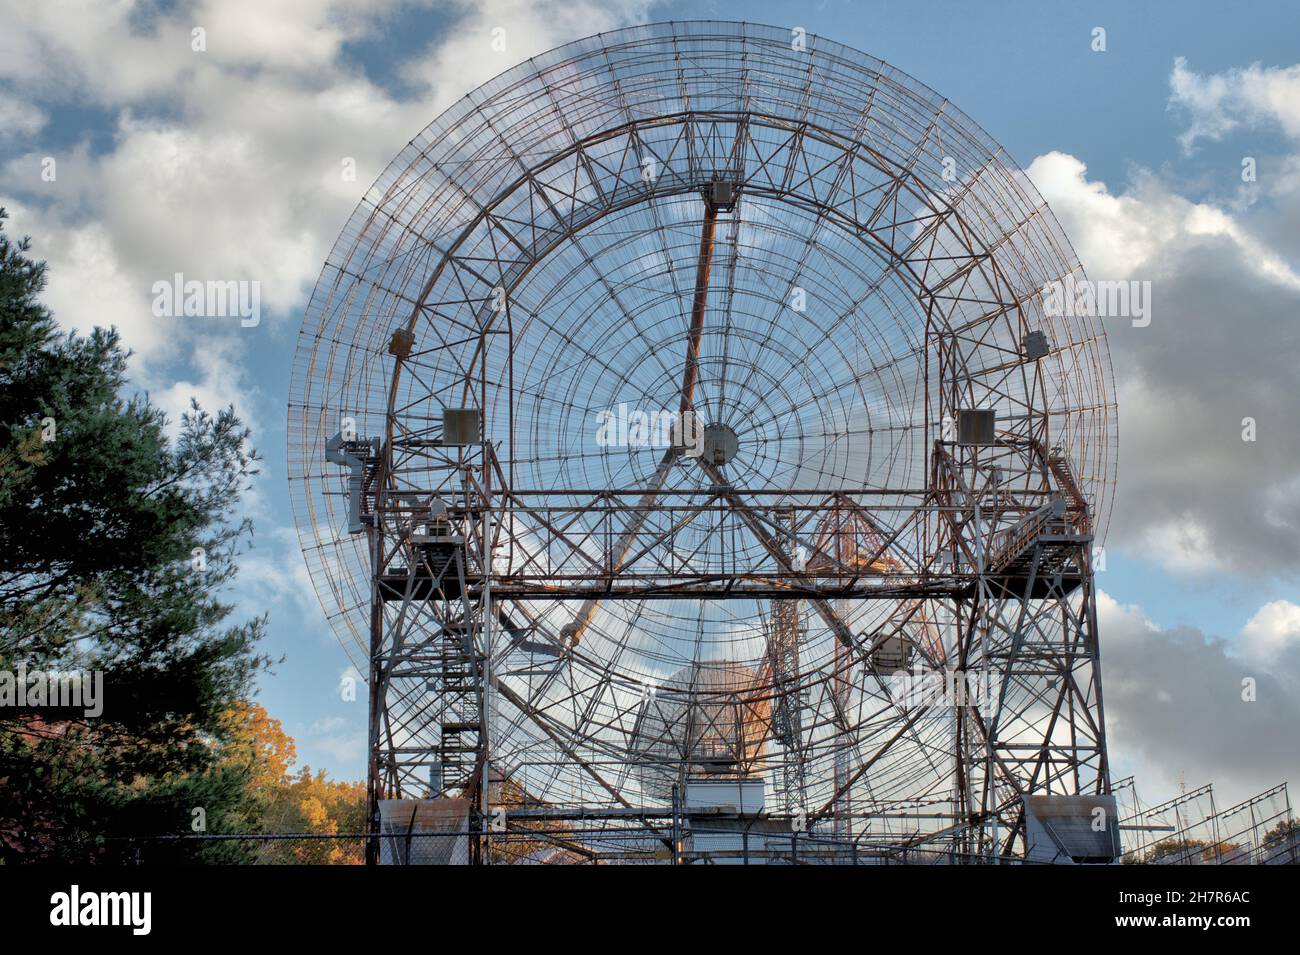 Lenkbare Radaranlage am mit Haystack Observatory in Massachusetts. Radioteleskop wird verwendet, um zu untersuchen, wie Sonnenstrahlung die Ionosphäre beeinflusst. Stockfoto